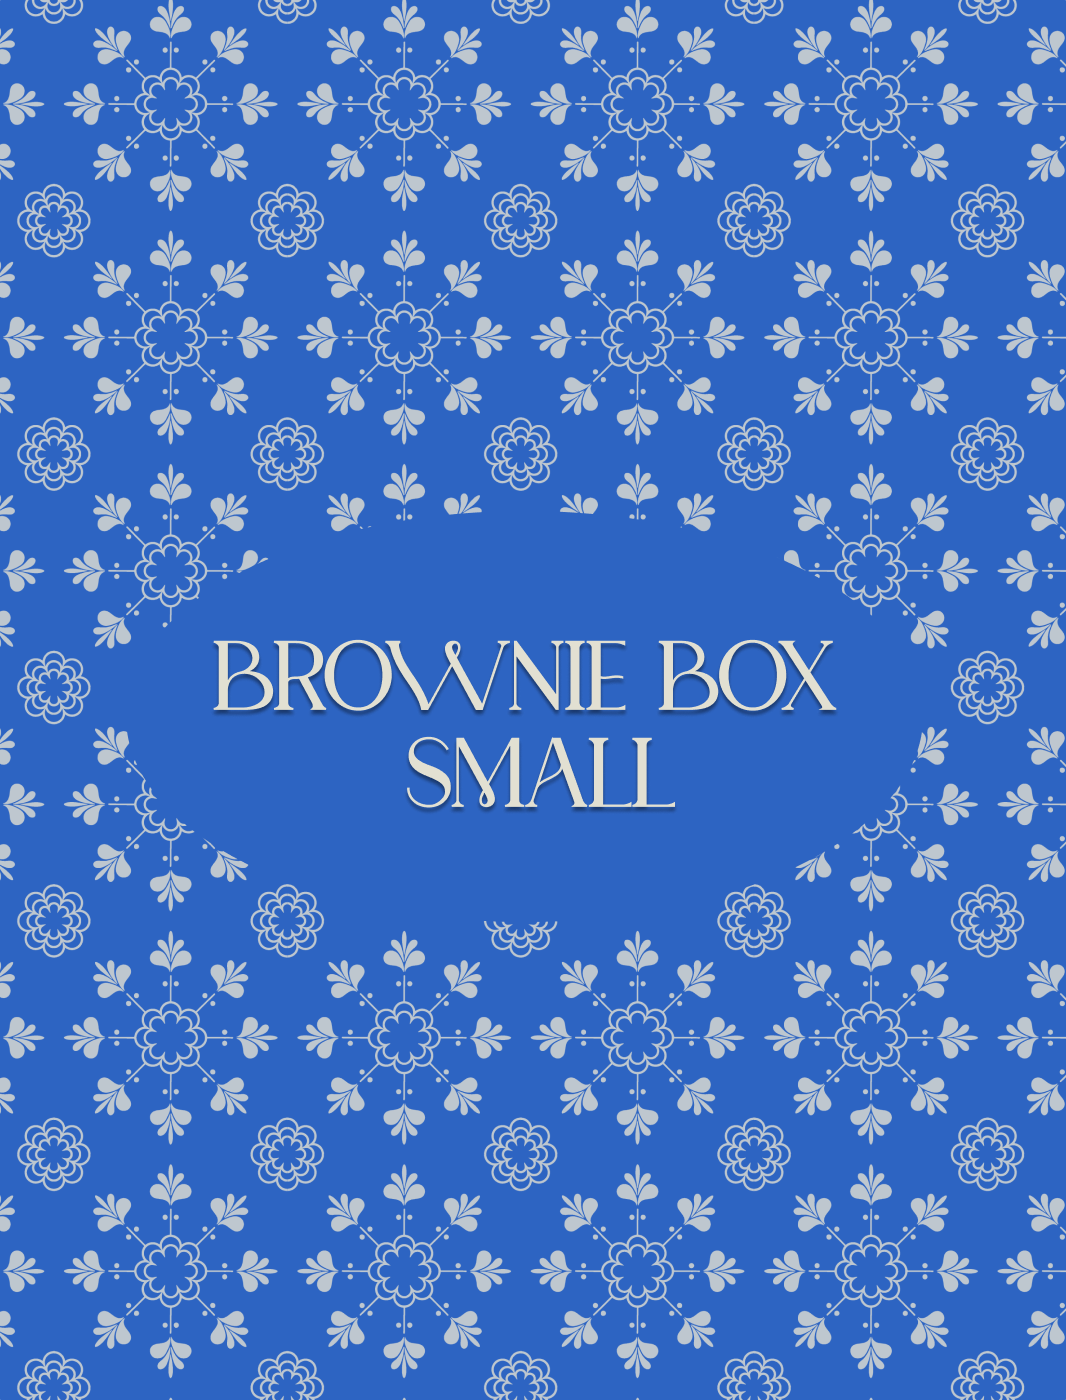 Brownies box small